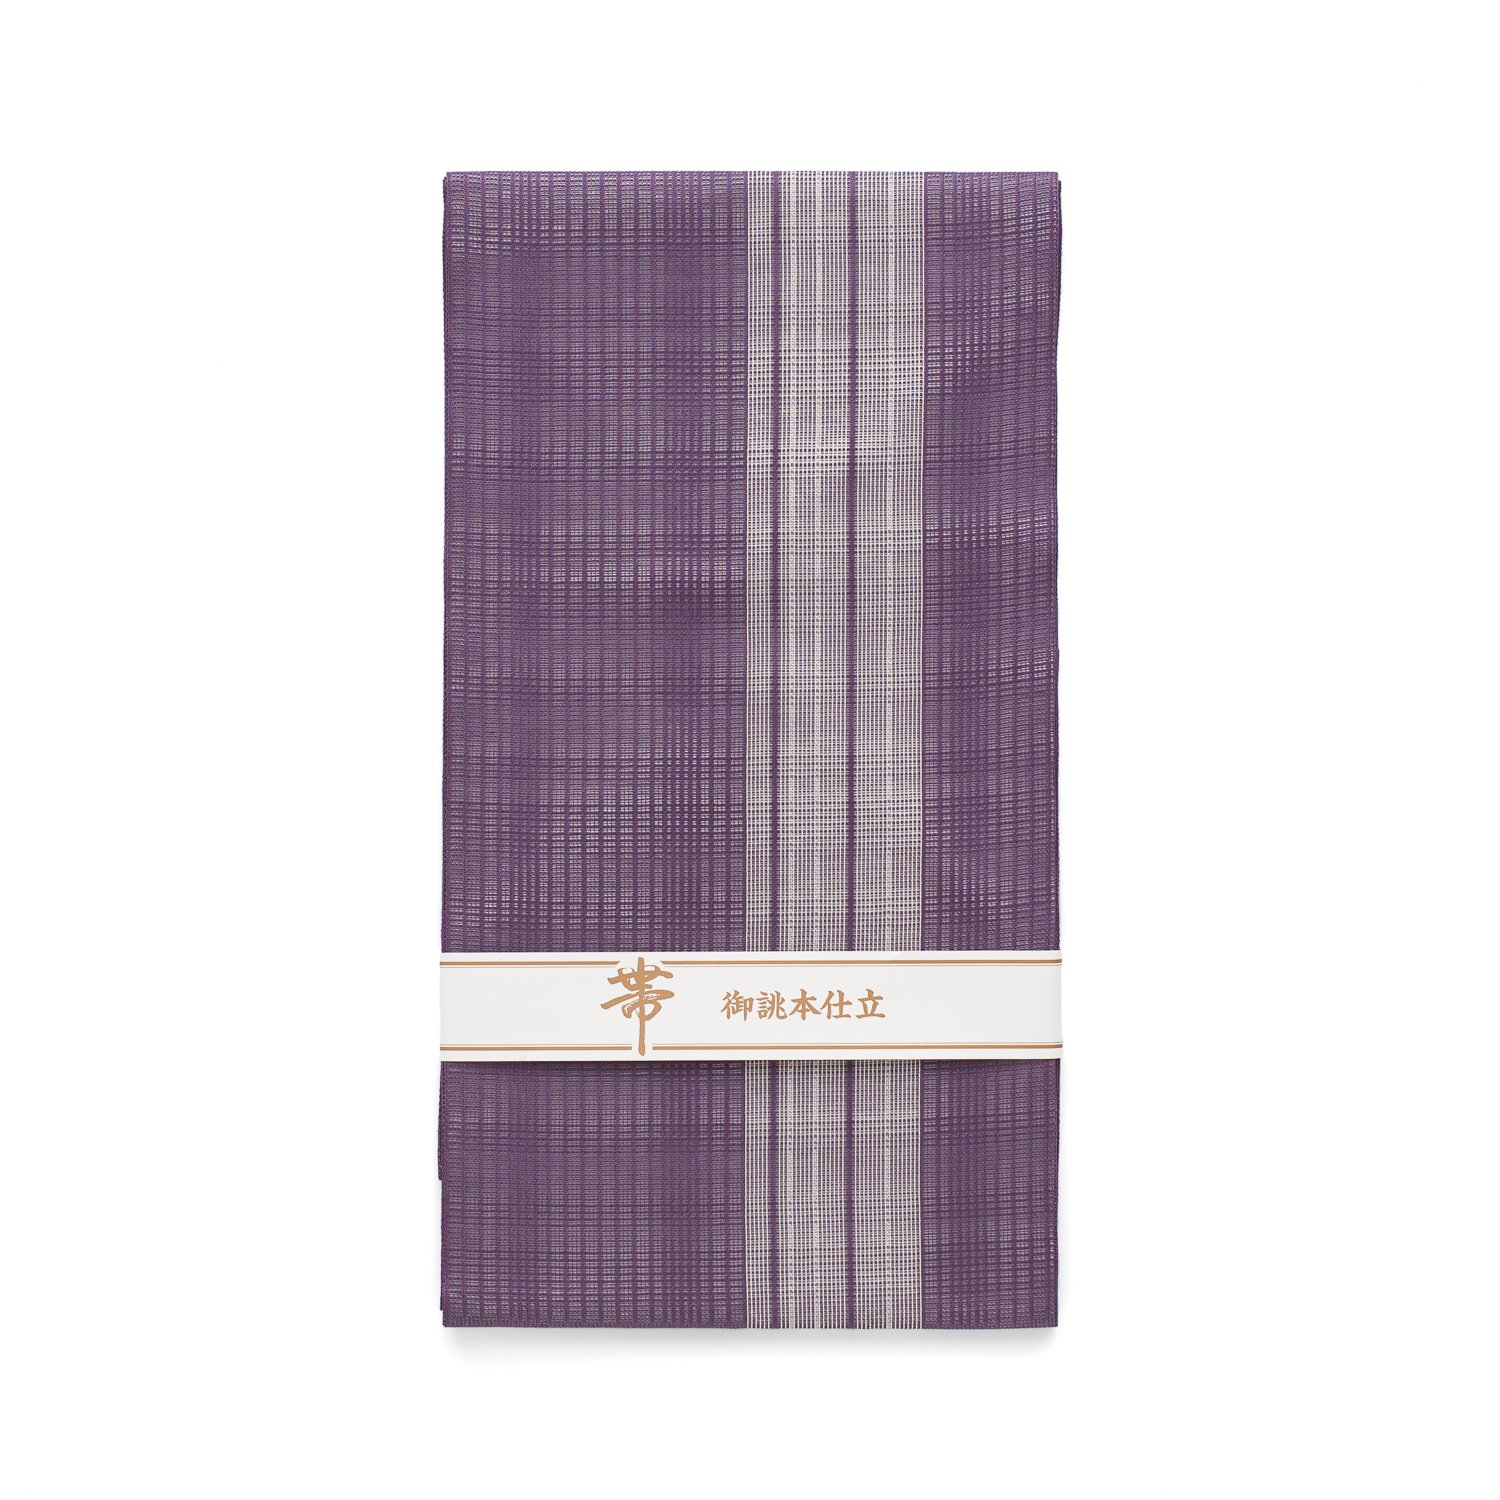 新品 紗 夏帯 江戸紫地に白色の縞 からん::アンティーク着物・リサイクル着物の通販サイト